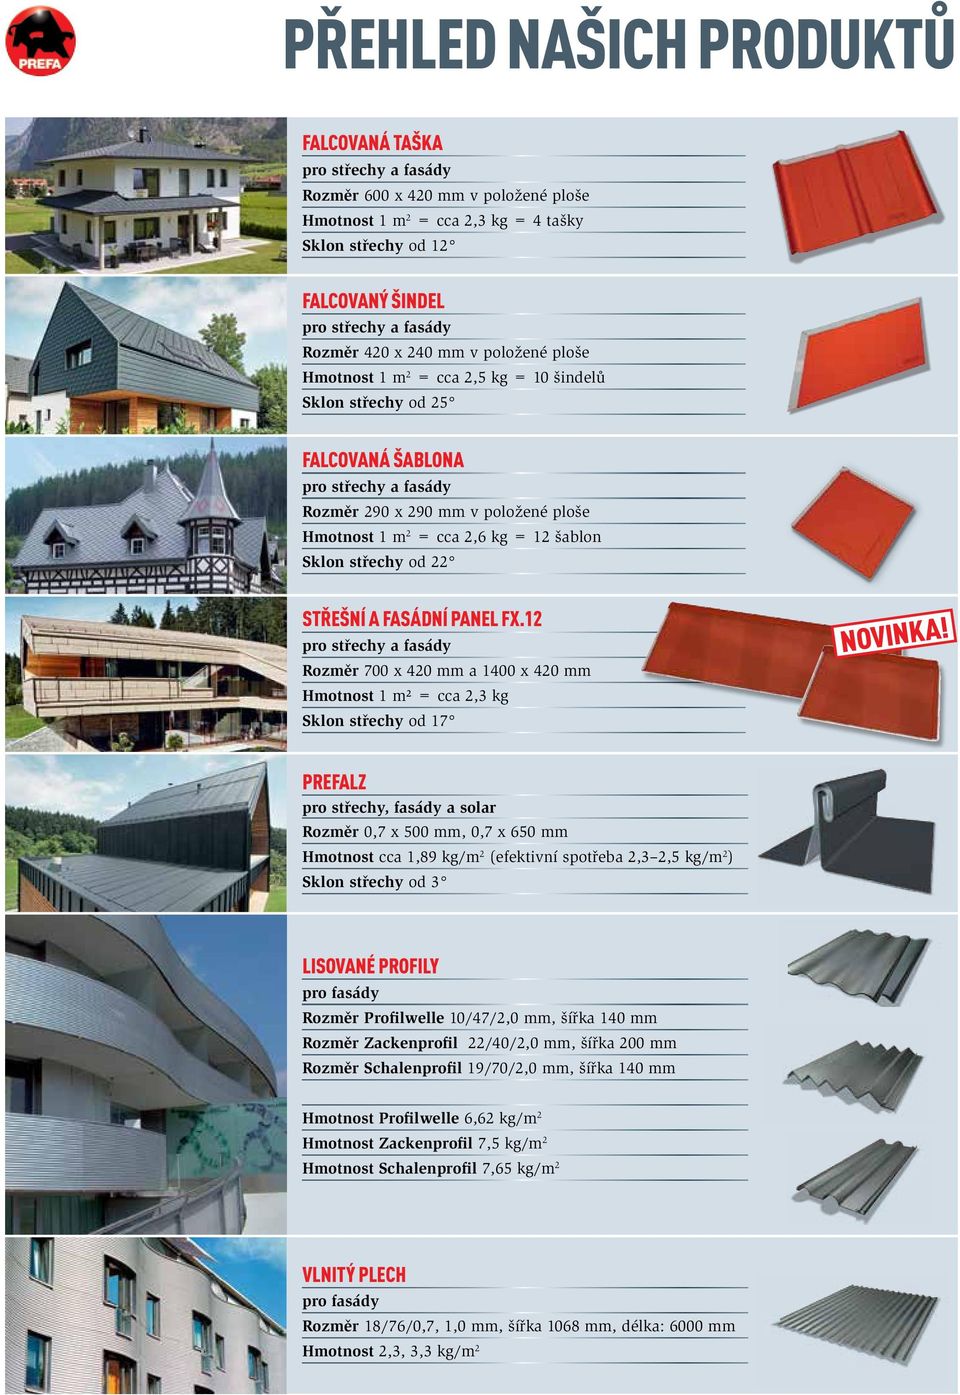 kg = 12 šablon Sklon střechy od 22 střešní a fasádní panel fx.12 pro střechy a fasády Rozměr 700 x 420 mm a 1400 x 420 mm Hmotnost 1 m² = cca 2,3 kg Sklon střechy od 17 Novinka!